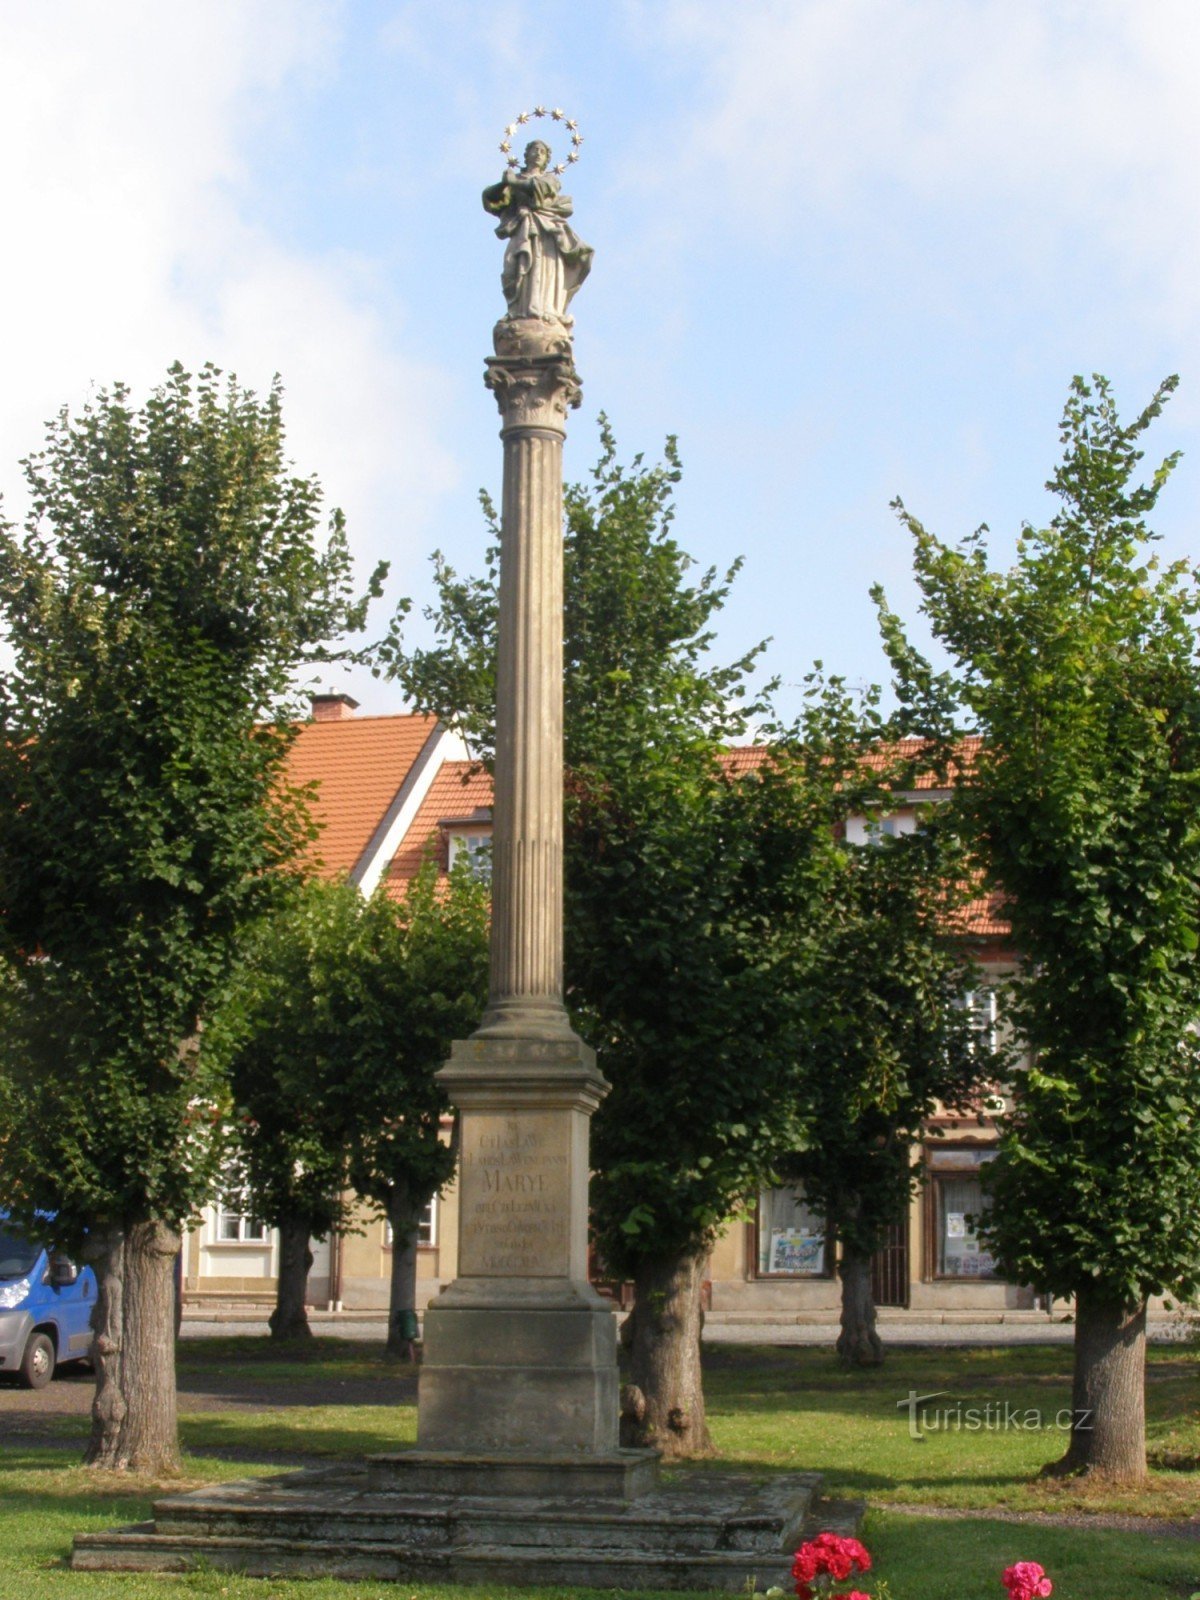 Ferrovia - náměstí Svobody, insieme di monumenti